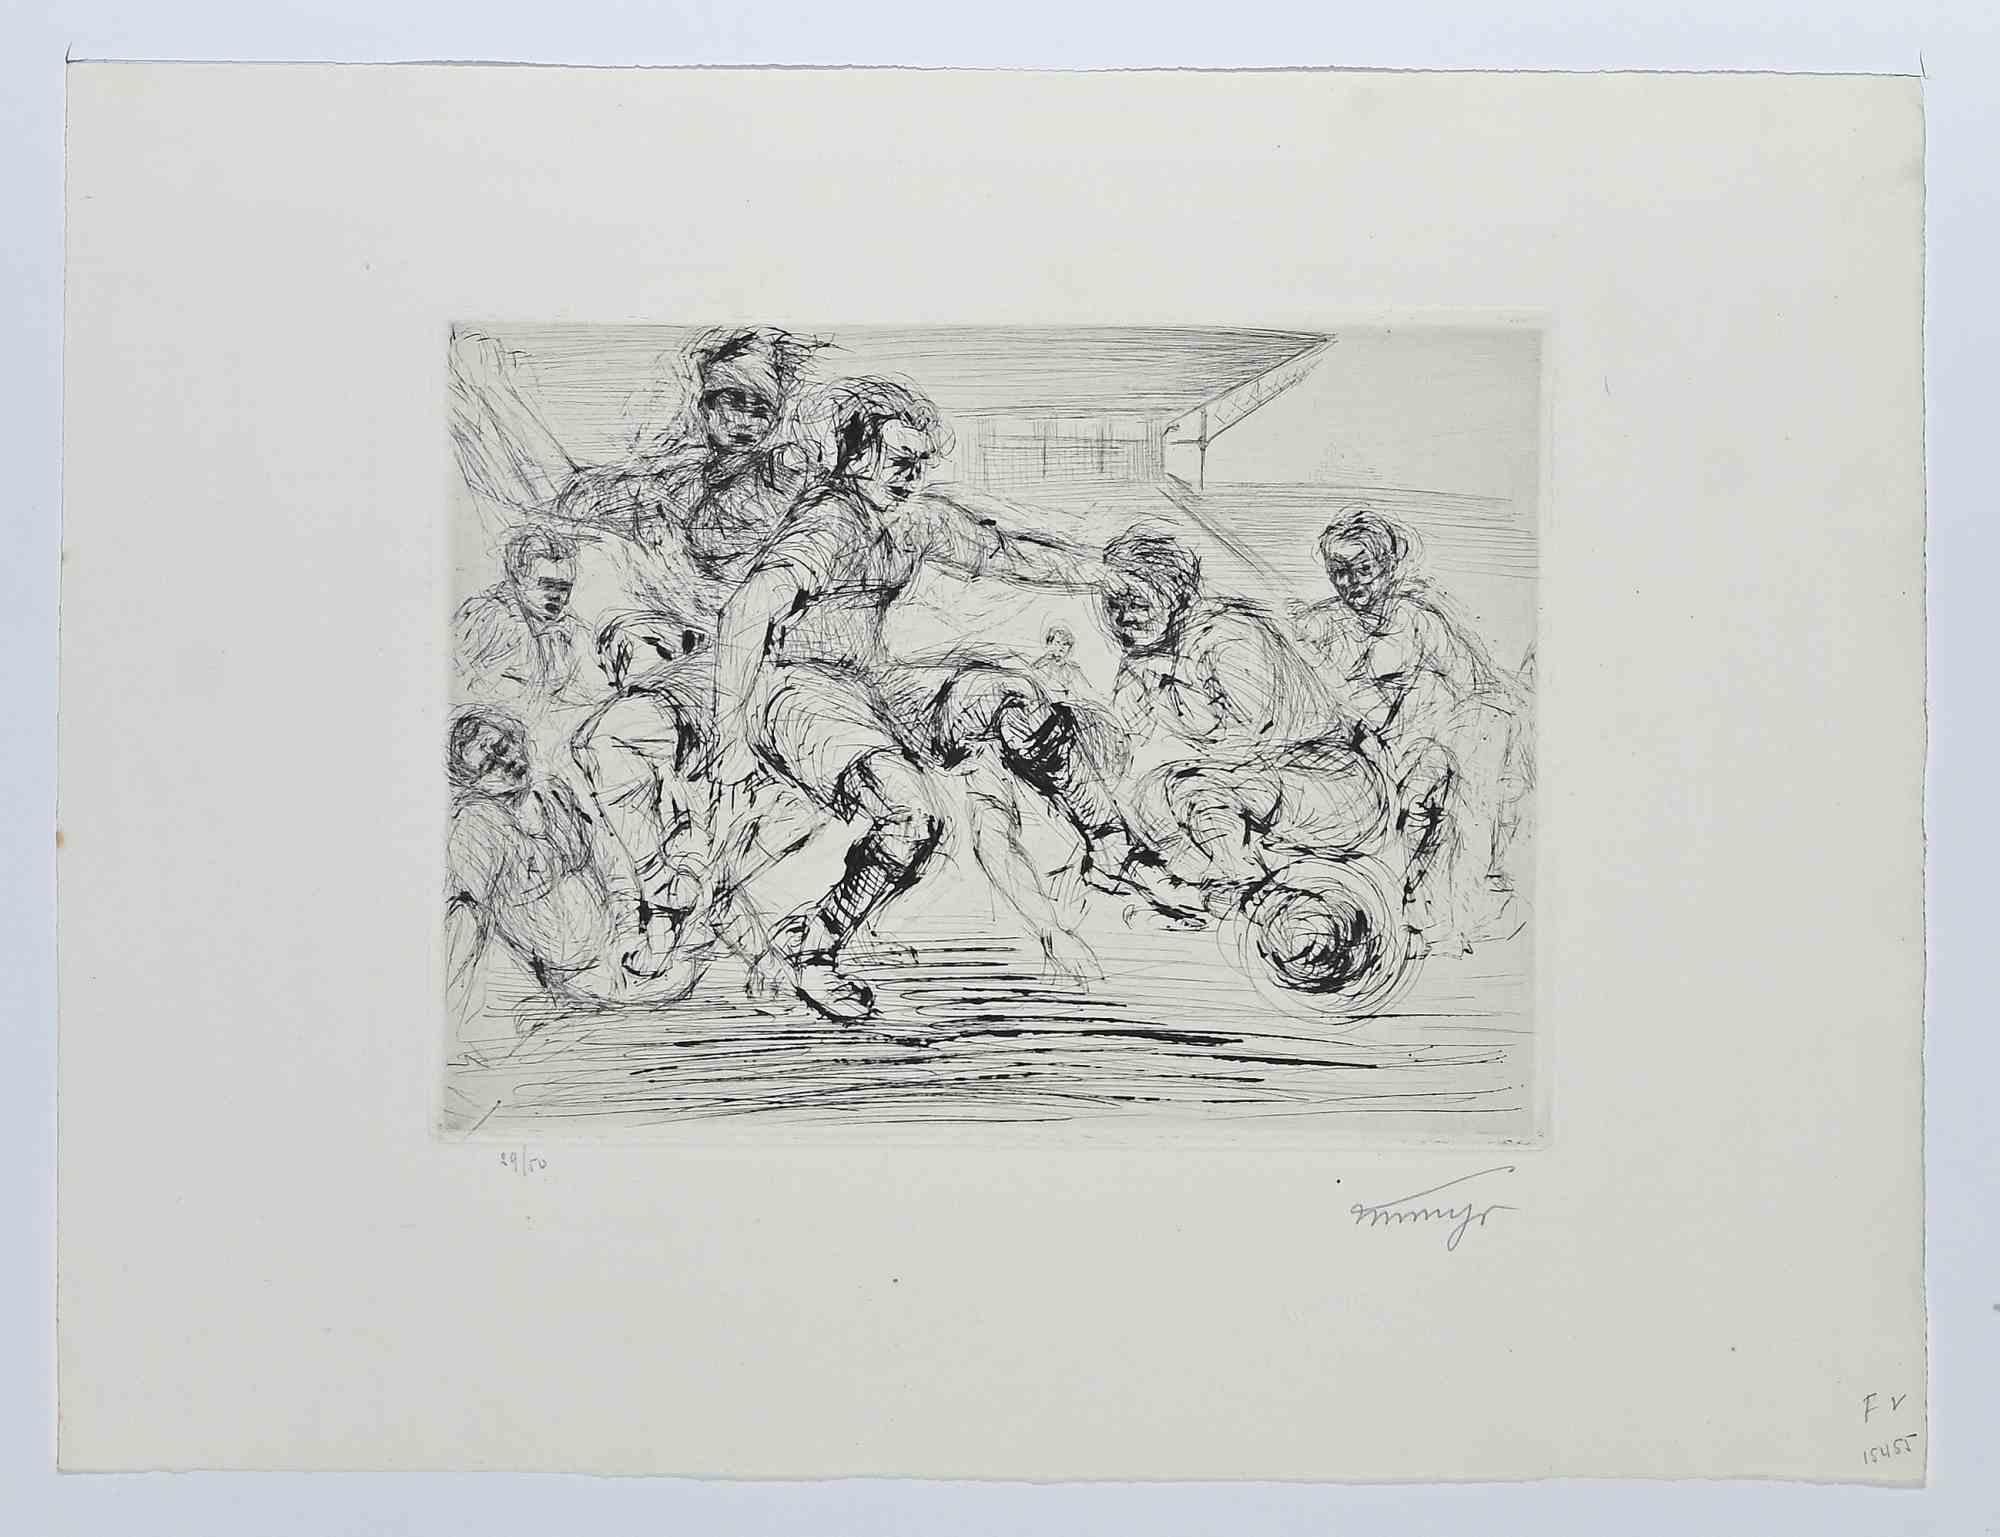 Die „Match de Football“ ist eine Originalradierung, die 1925 von Louis Marcel Myr (1893-1964) angefertigt wurde.

Das Originalwerk ist in einem weißen Passepartout mit den Maßen 32,5 x 49,5 cm enthalten.

Guter Zustand, Auflage: 29/50.

Am unteren